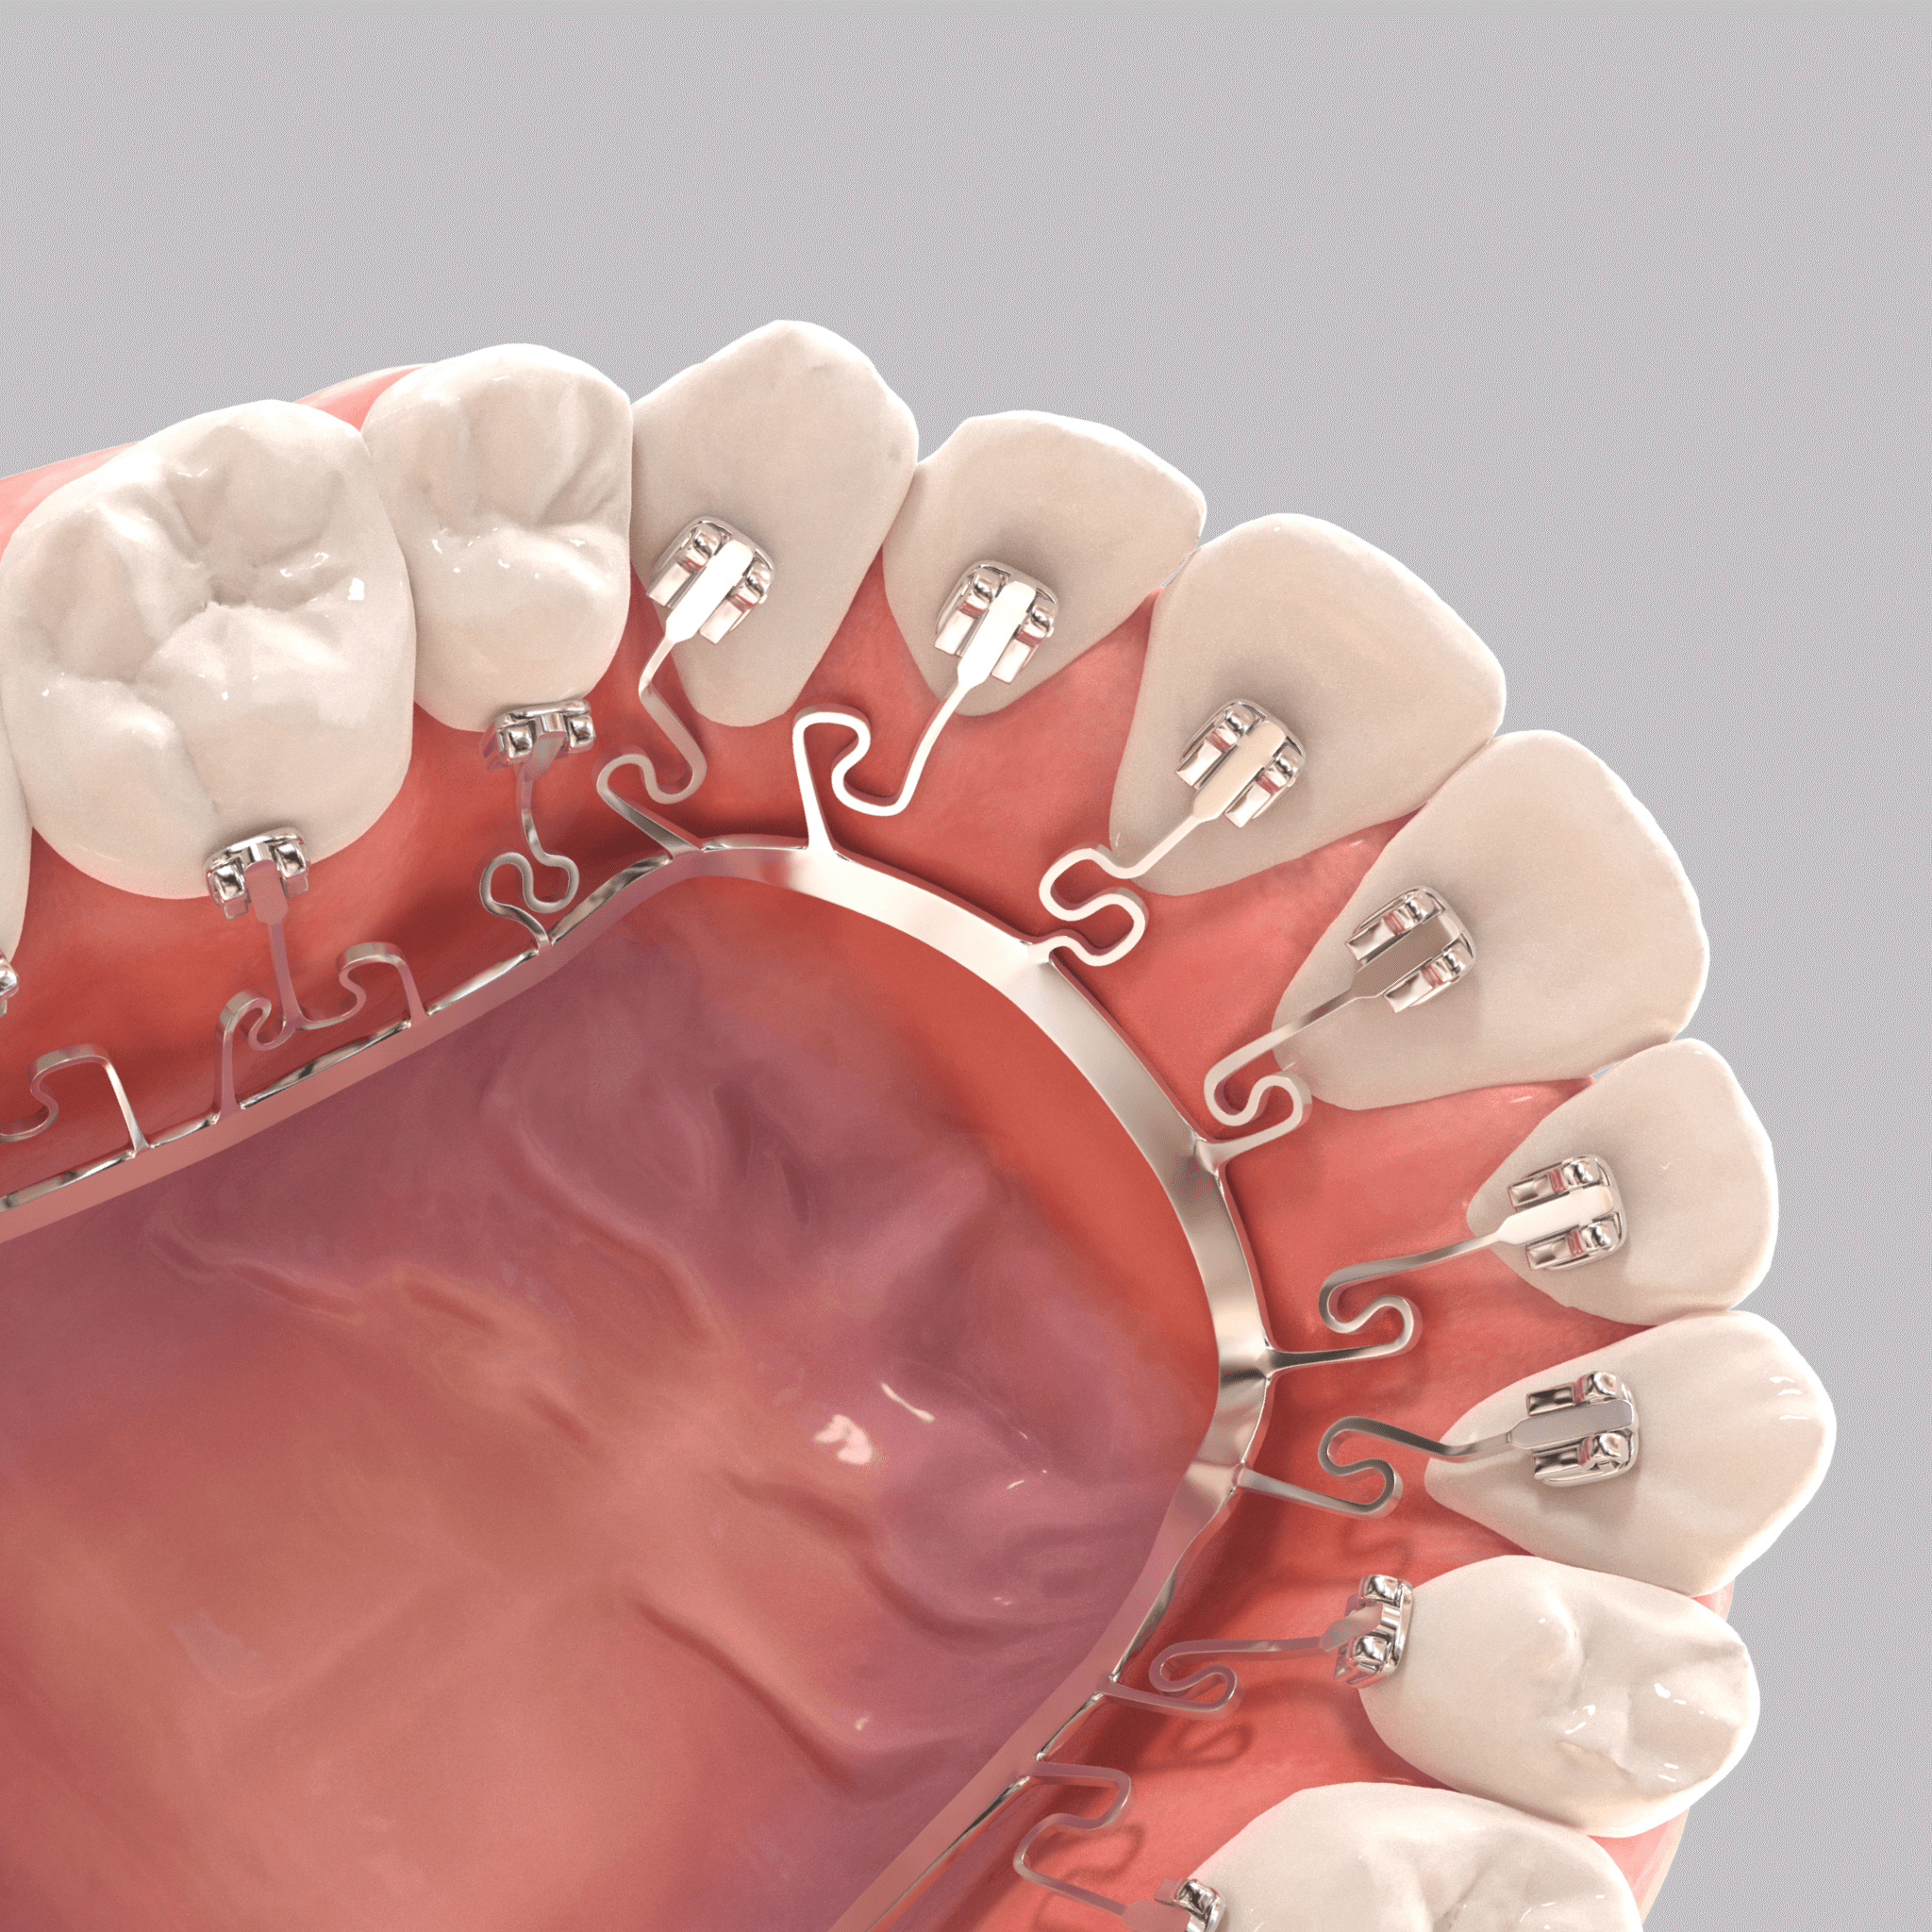 Braces behind the teeth - BRIUS braces